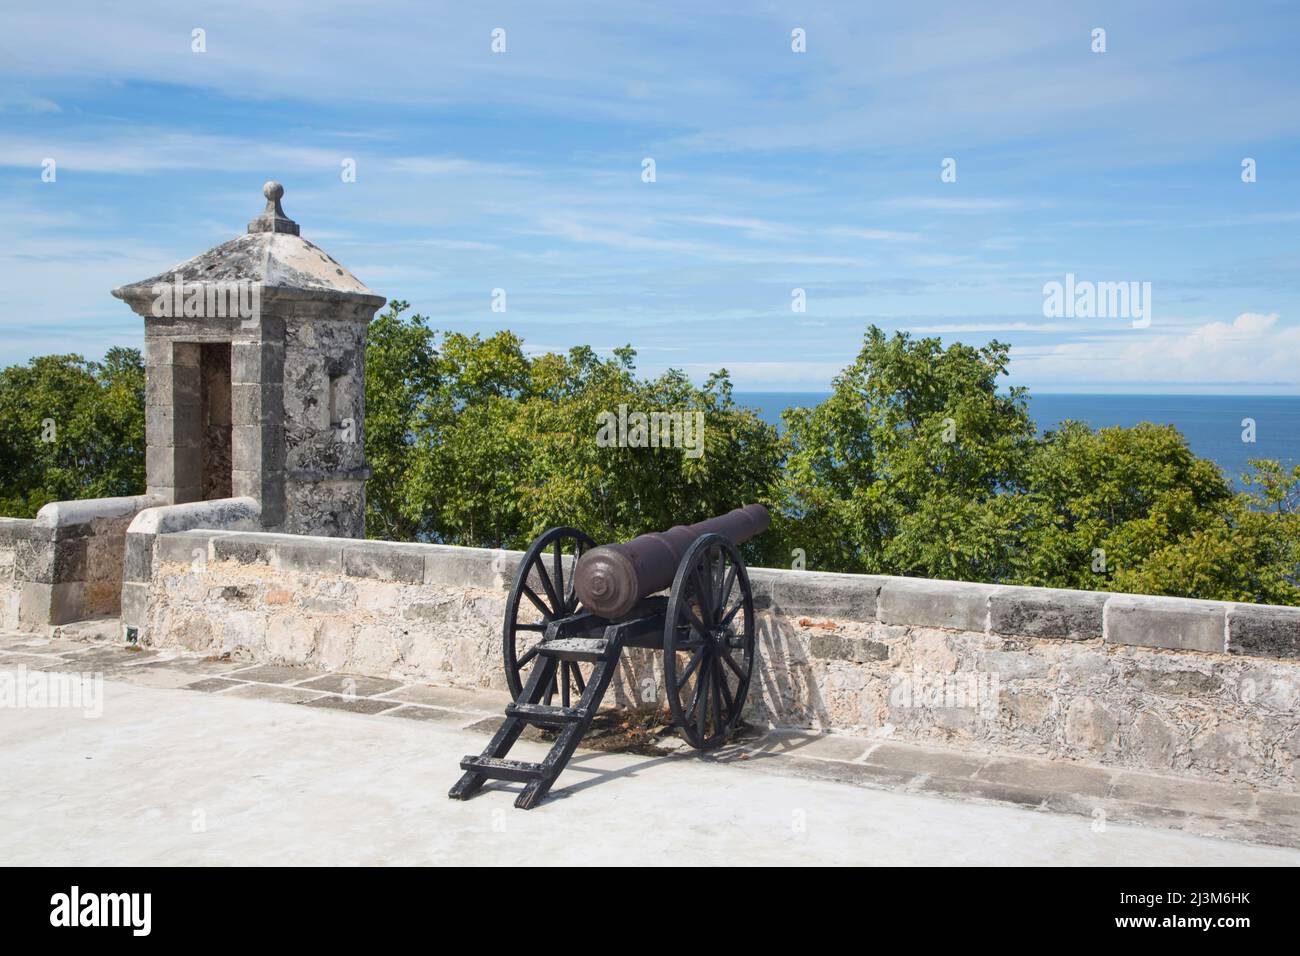 Canon in Fort von San Jose el Alto, Campeche, Mexiko; Campeche, Bundesstaat Campeche, Mexiko Stockfoto